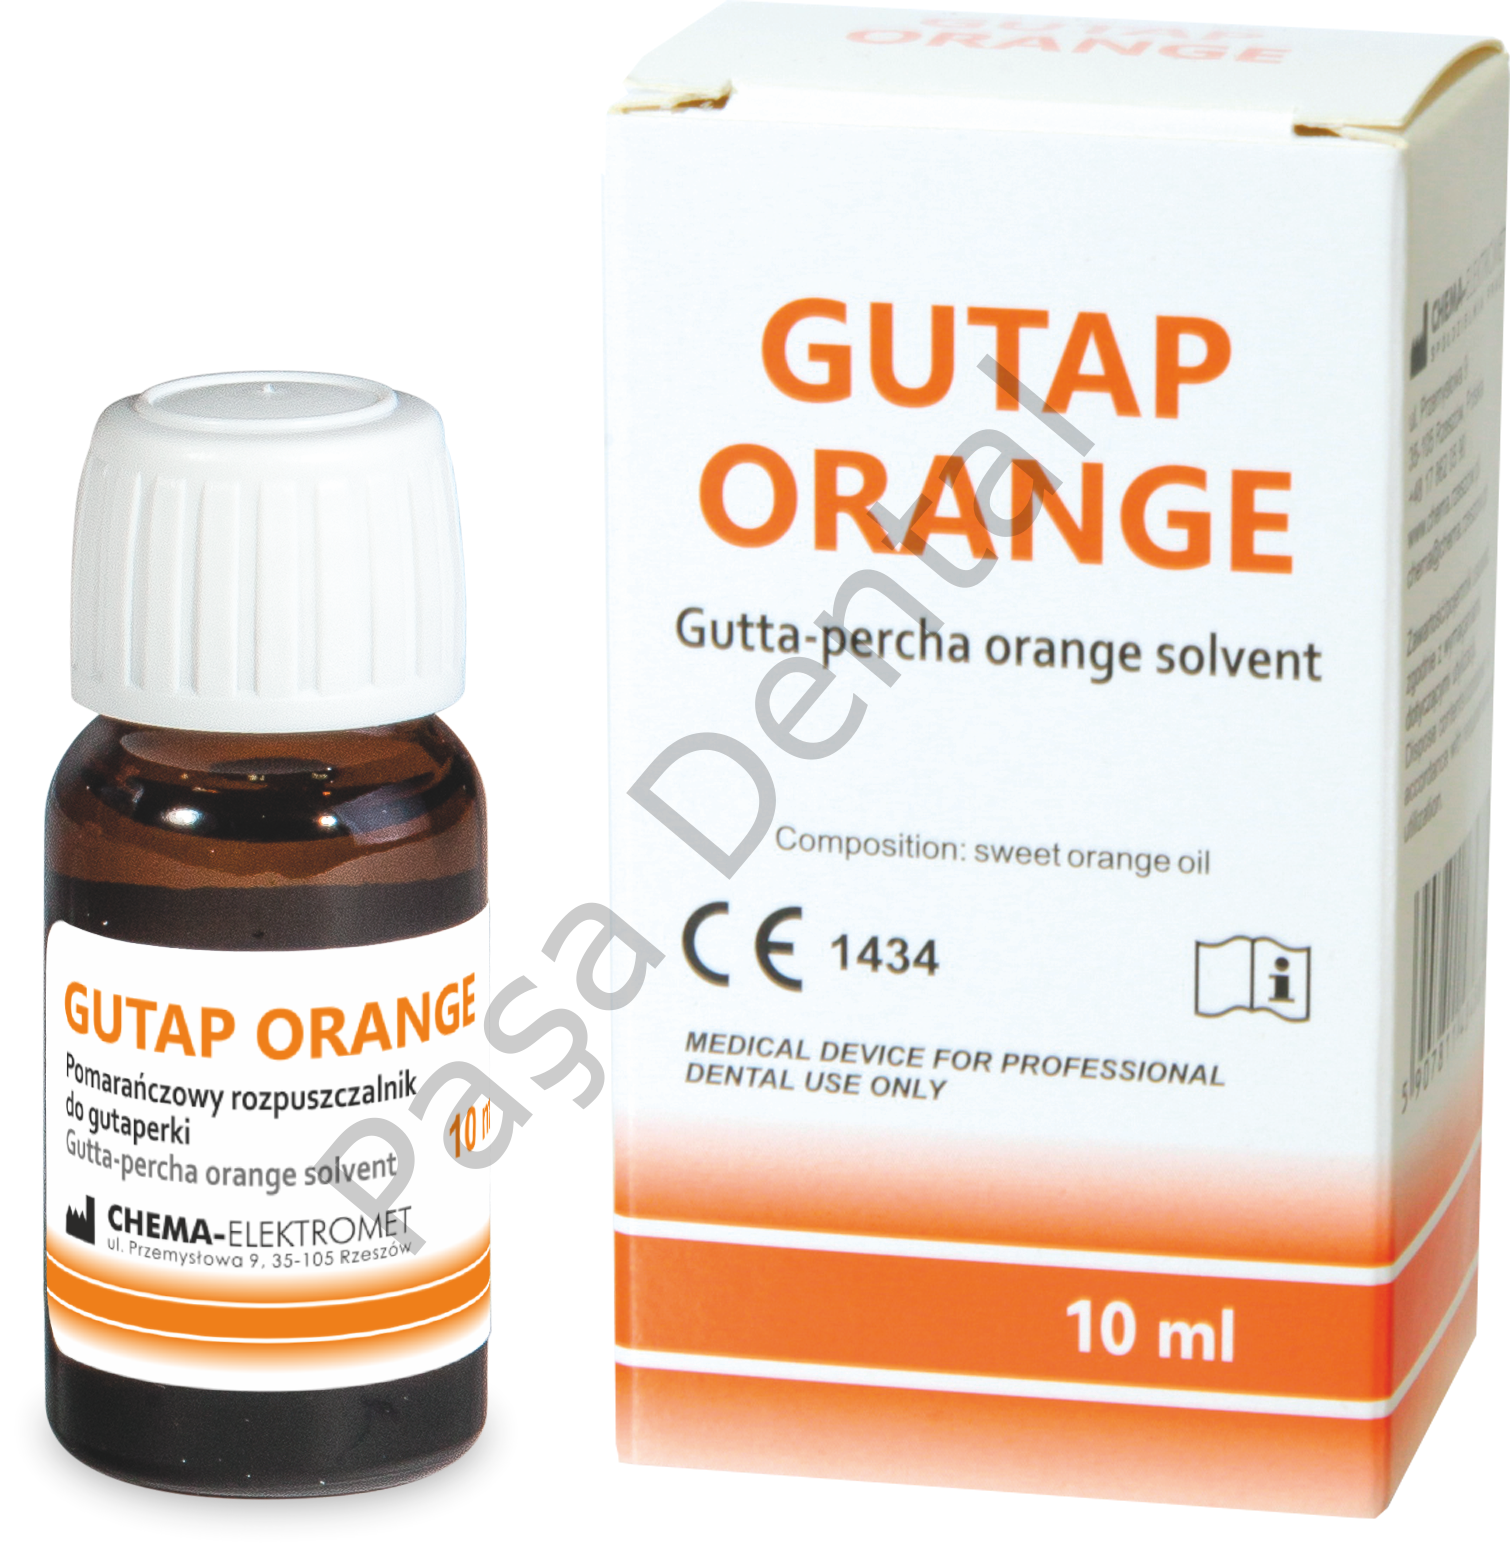 Gutap Orange-Portakal Yağlı Guta Perka  Çözücü